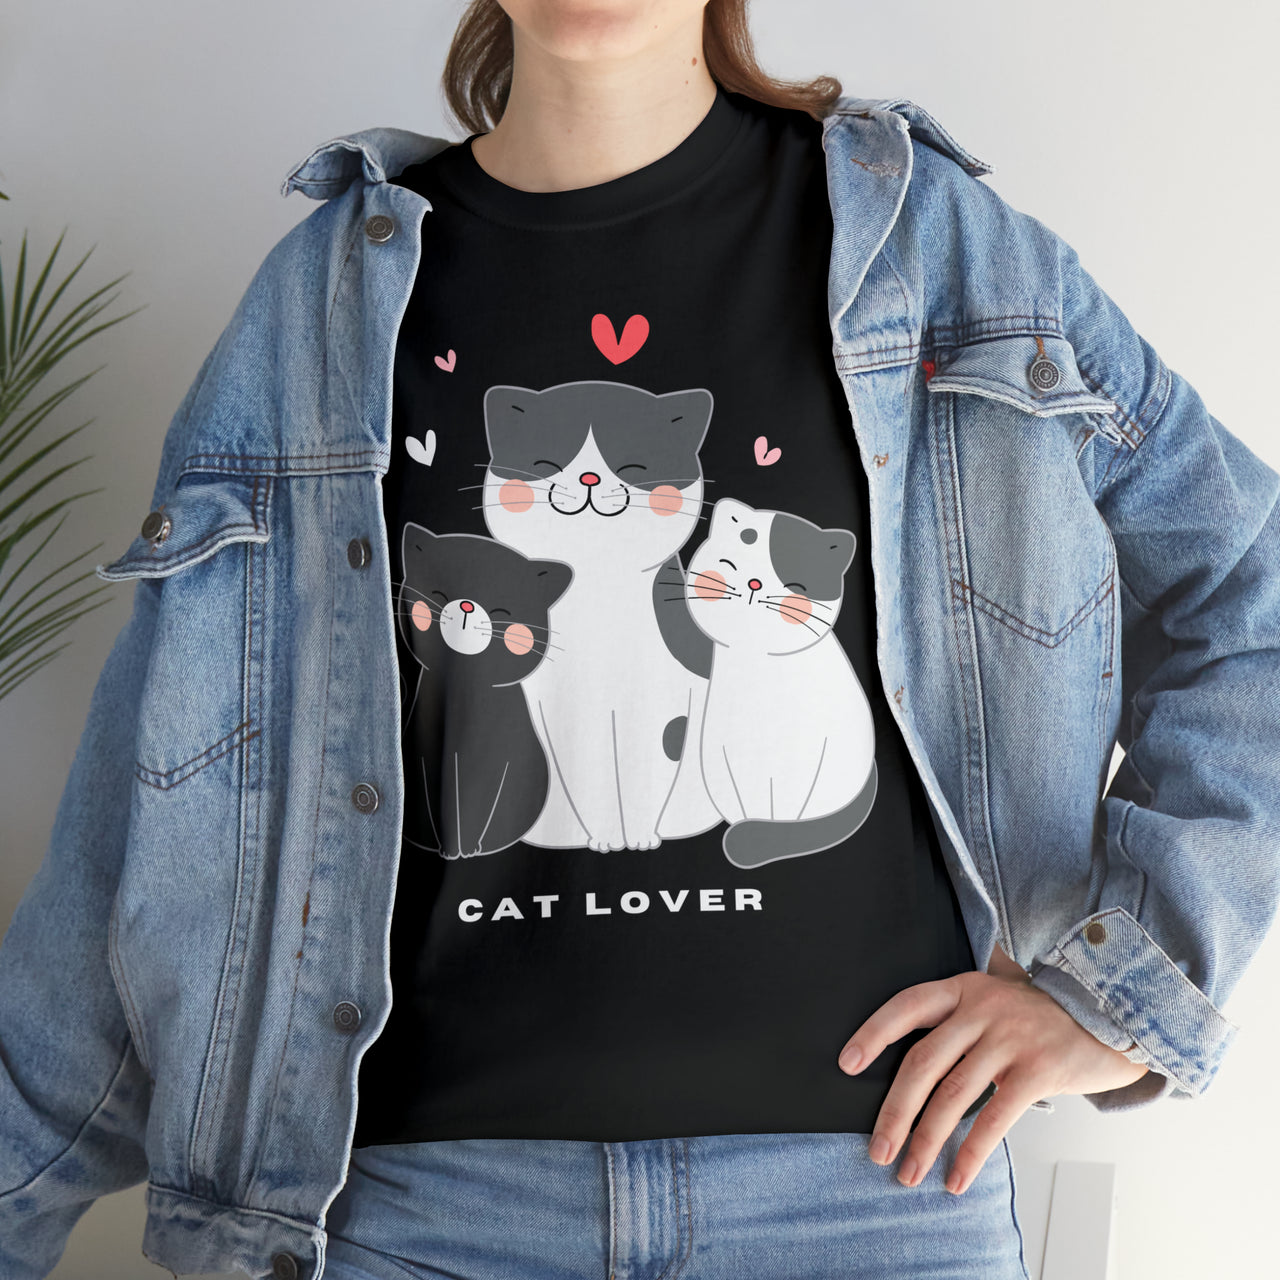 Cat Lover Trio 🐾 Unisex T-Shirt